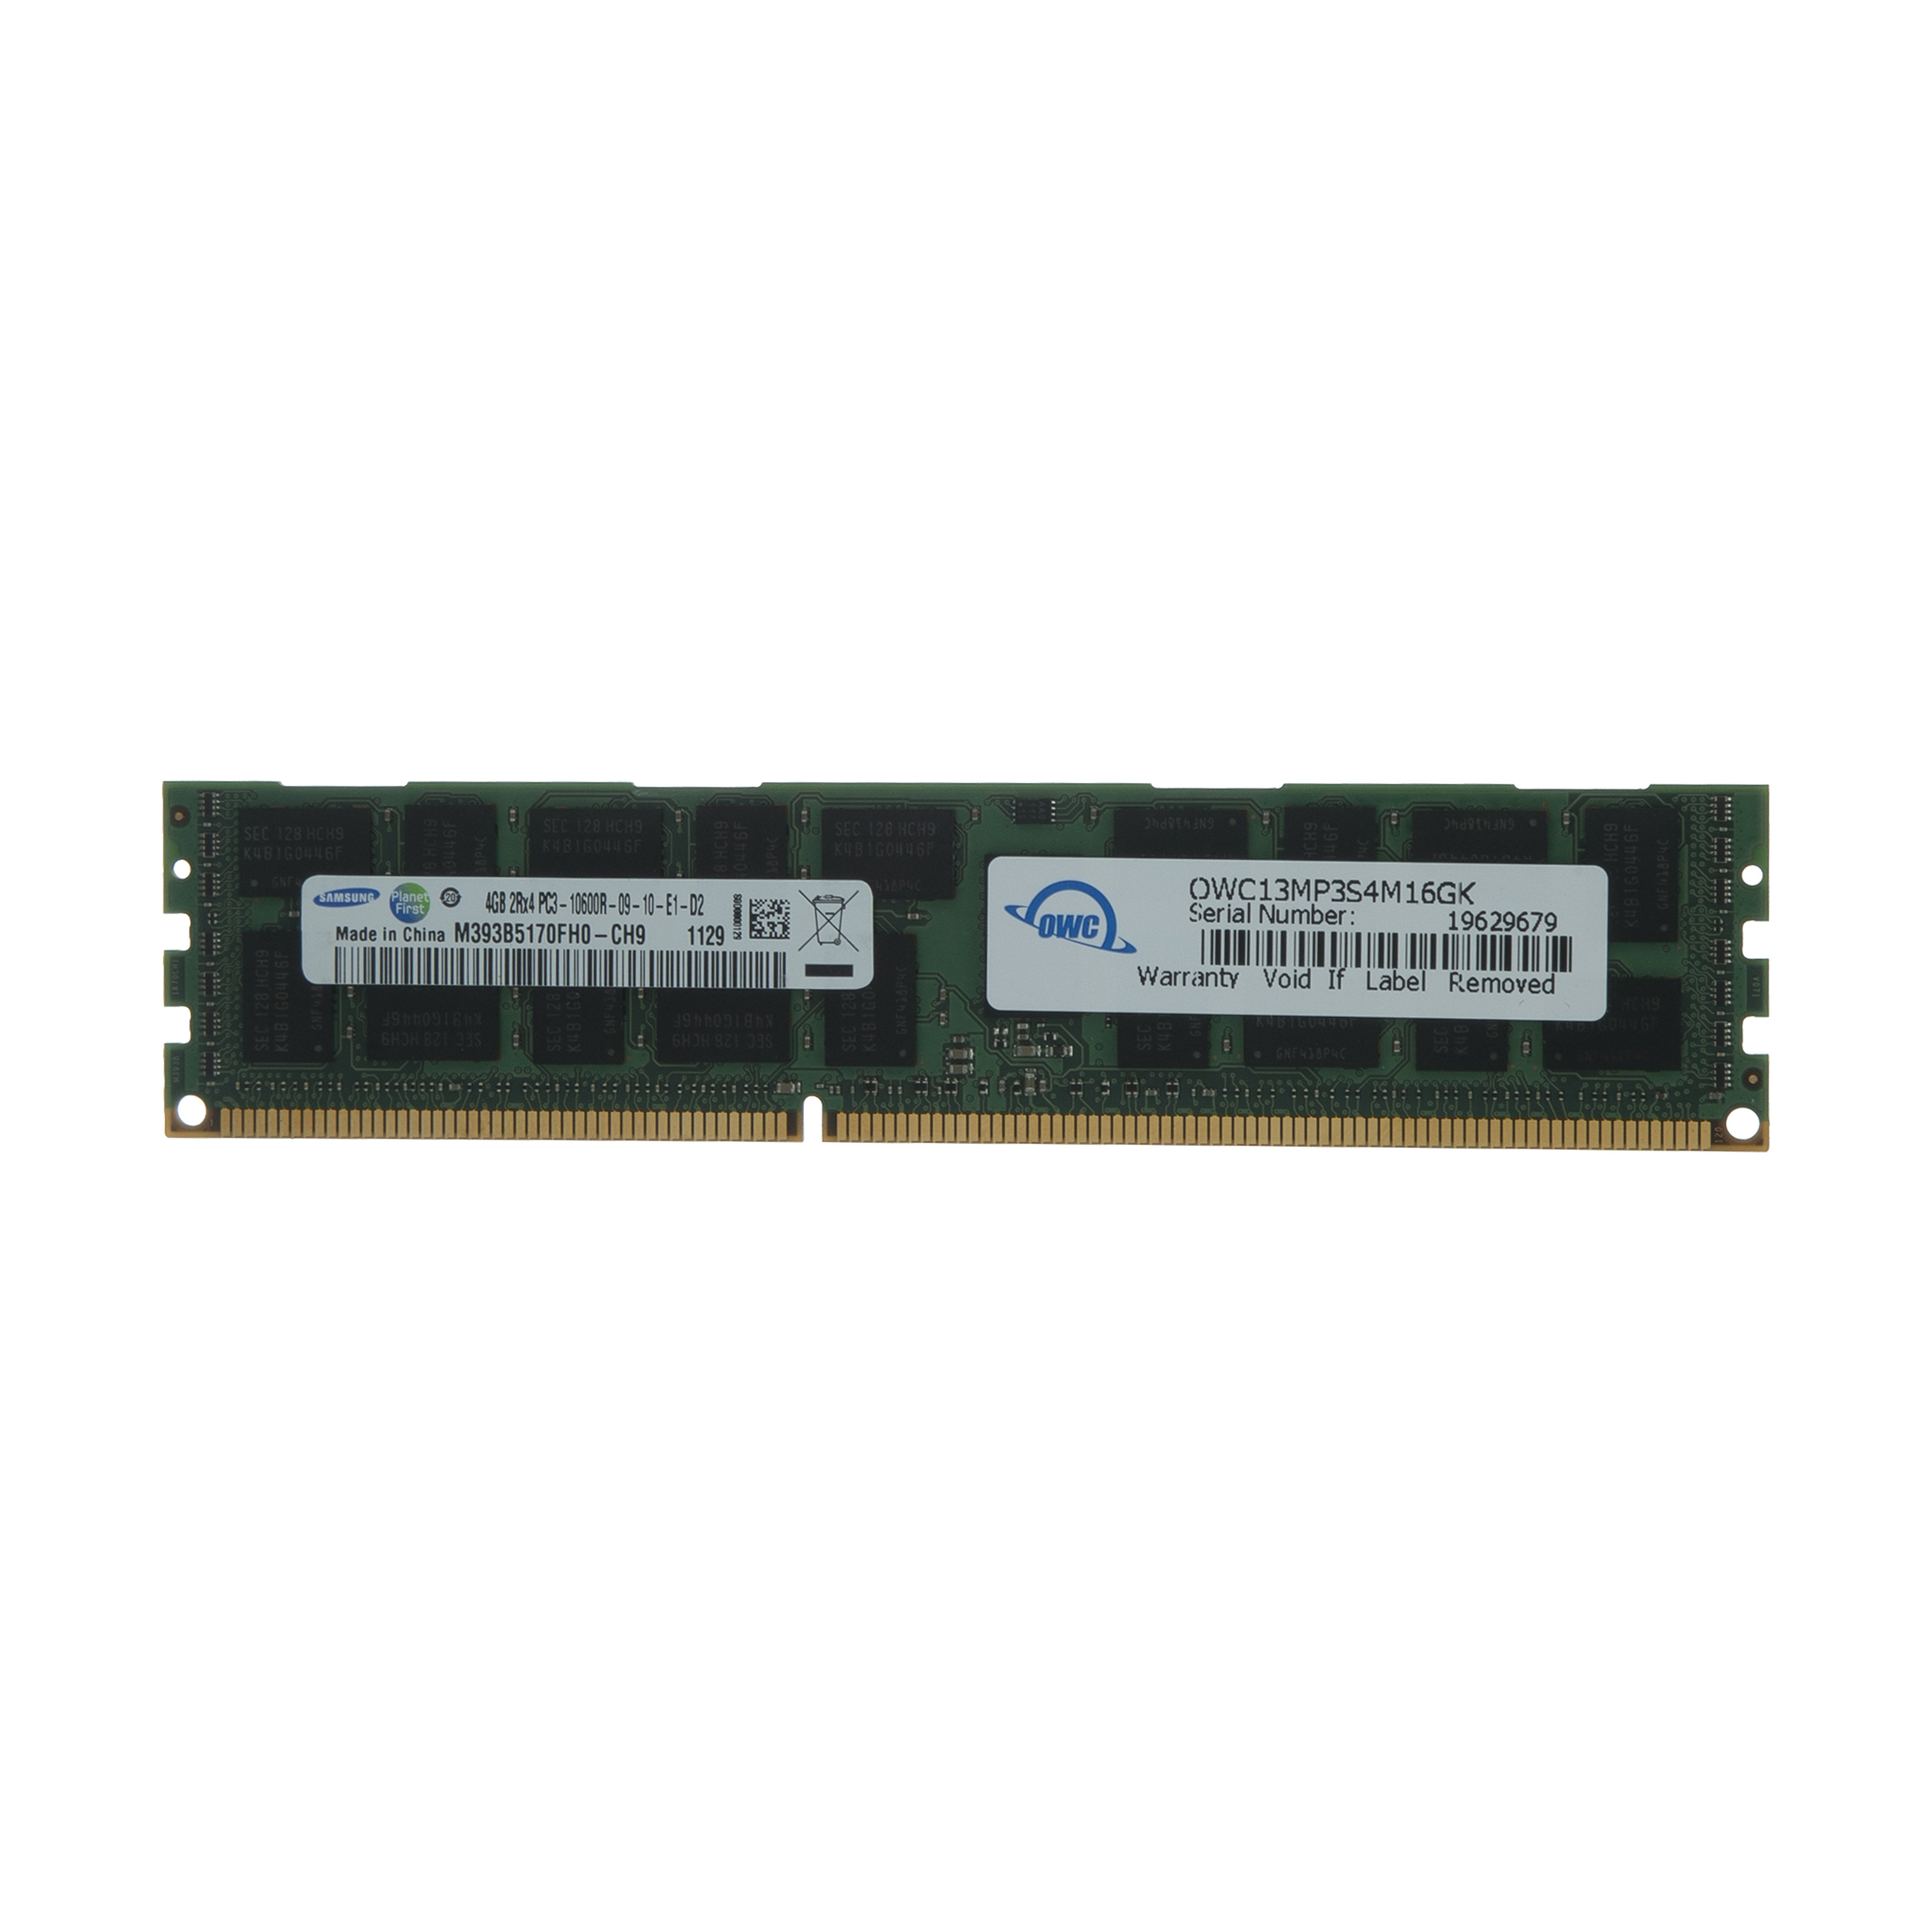 رم سرور DDR3 دو کاناله 1333 مگاهرتز CL7 اُ دبلیو سی مدل PC10600 ECC Registered ظرفیت 4 گیگابایت